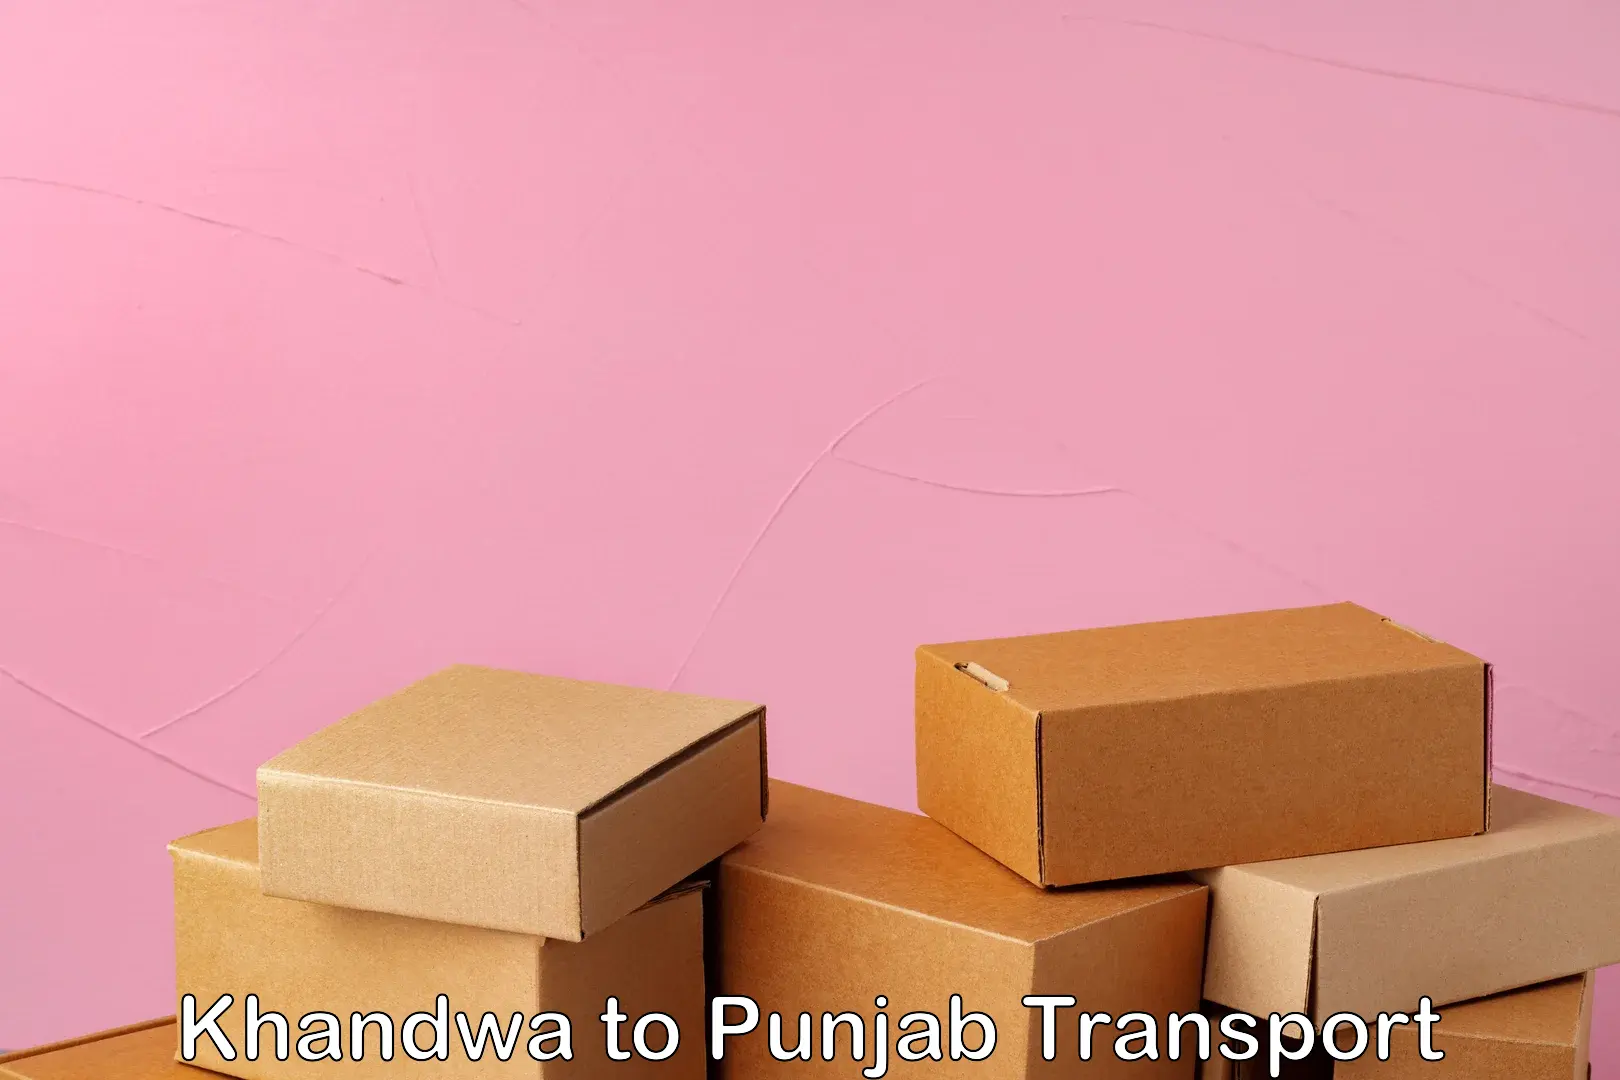 Cycle transportation service Khandwa to Punjab